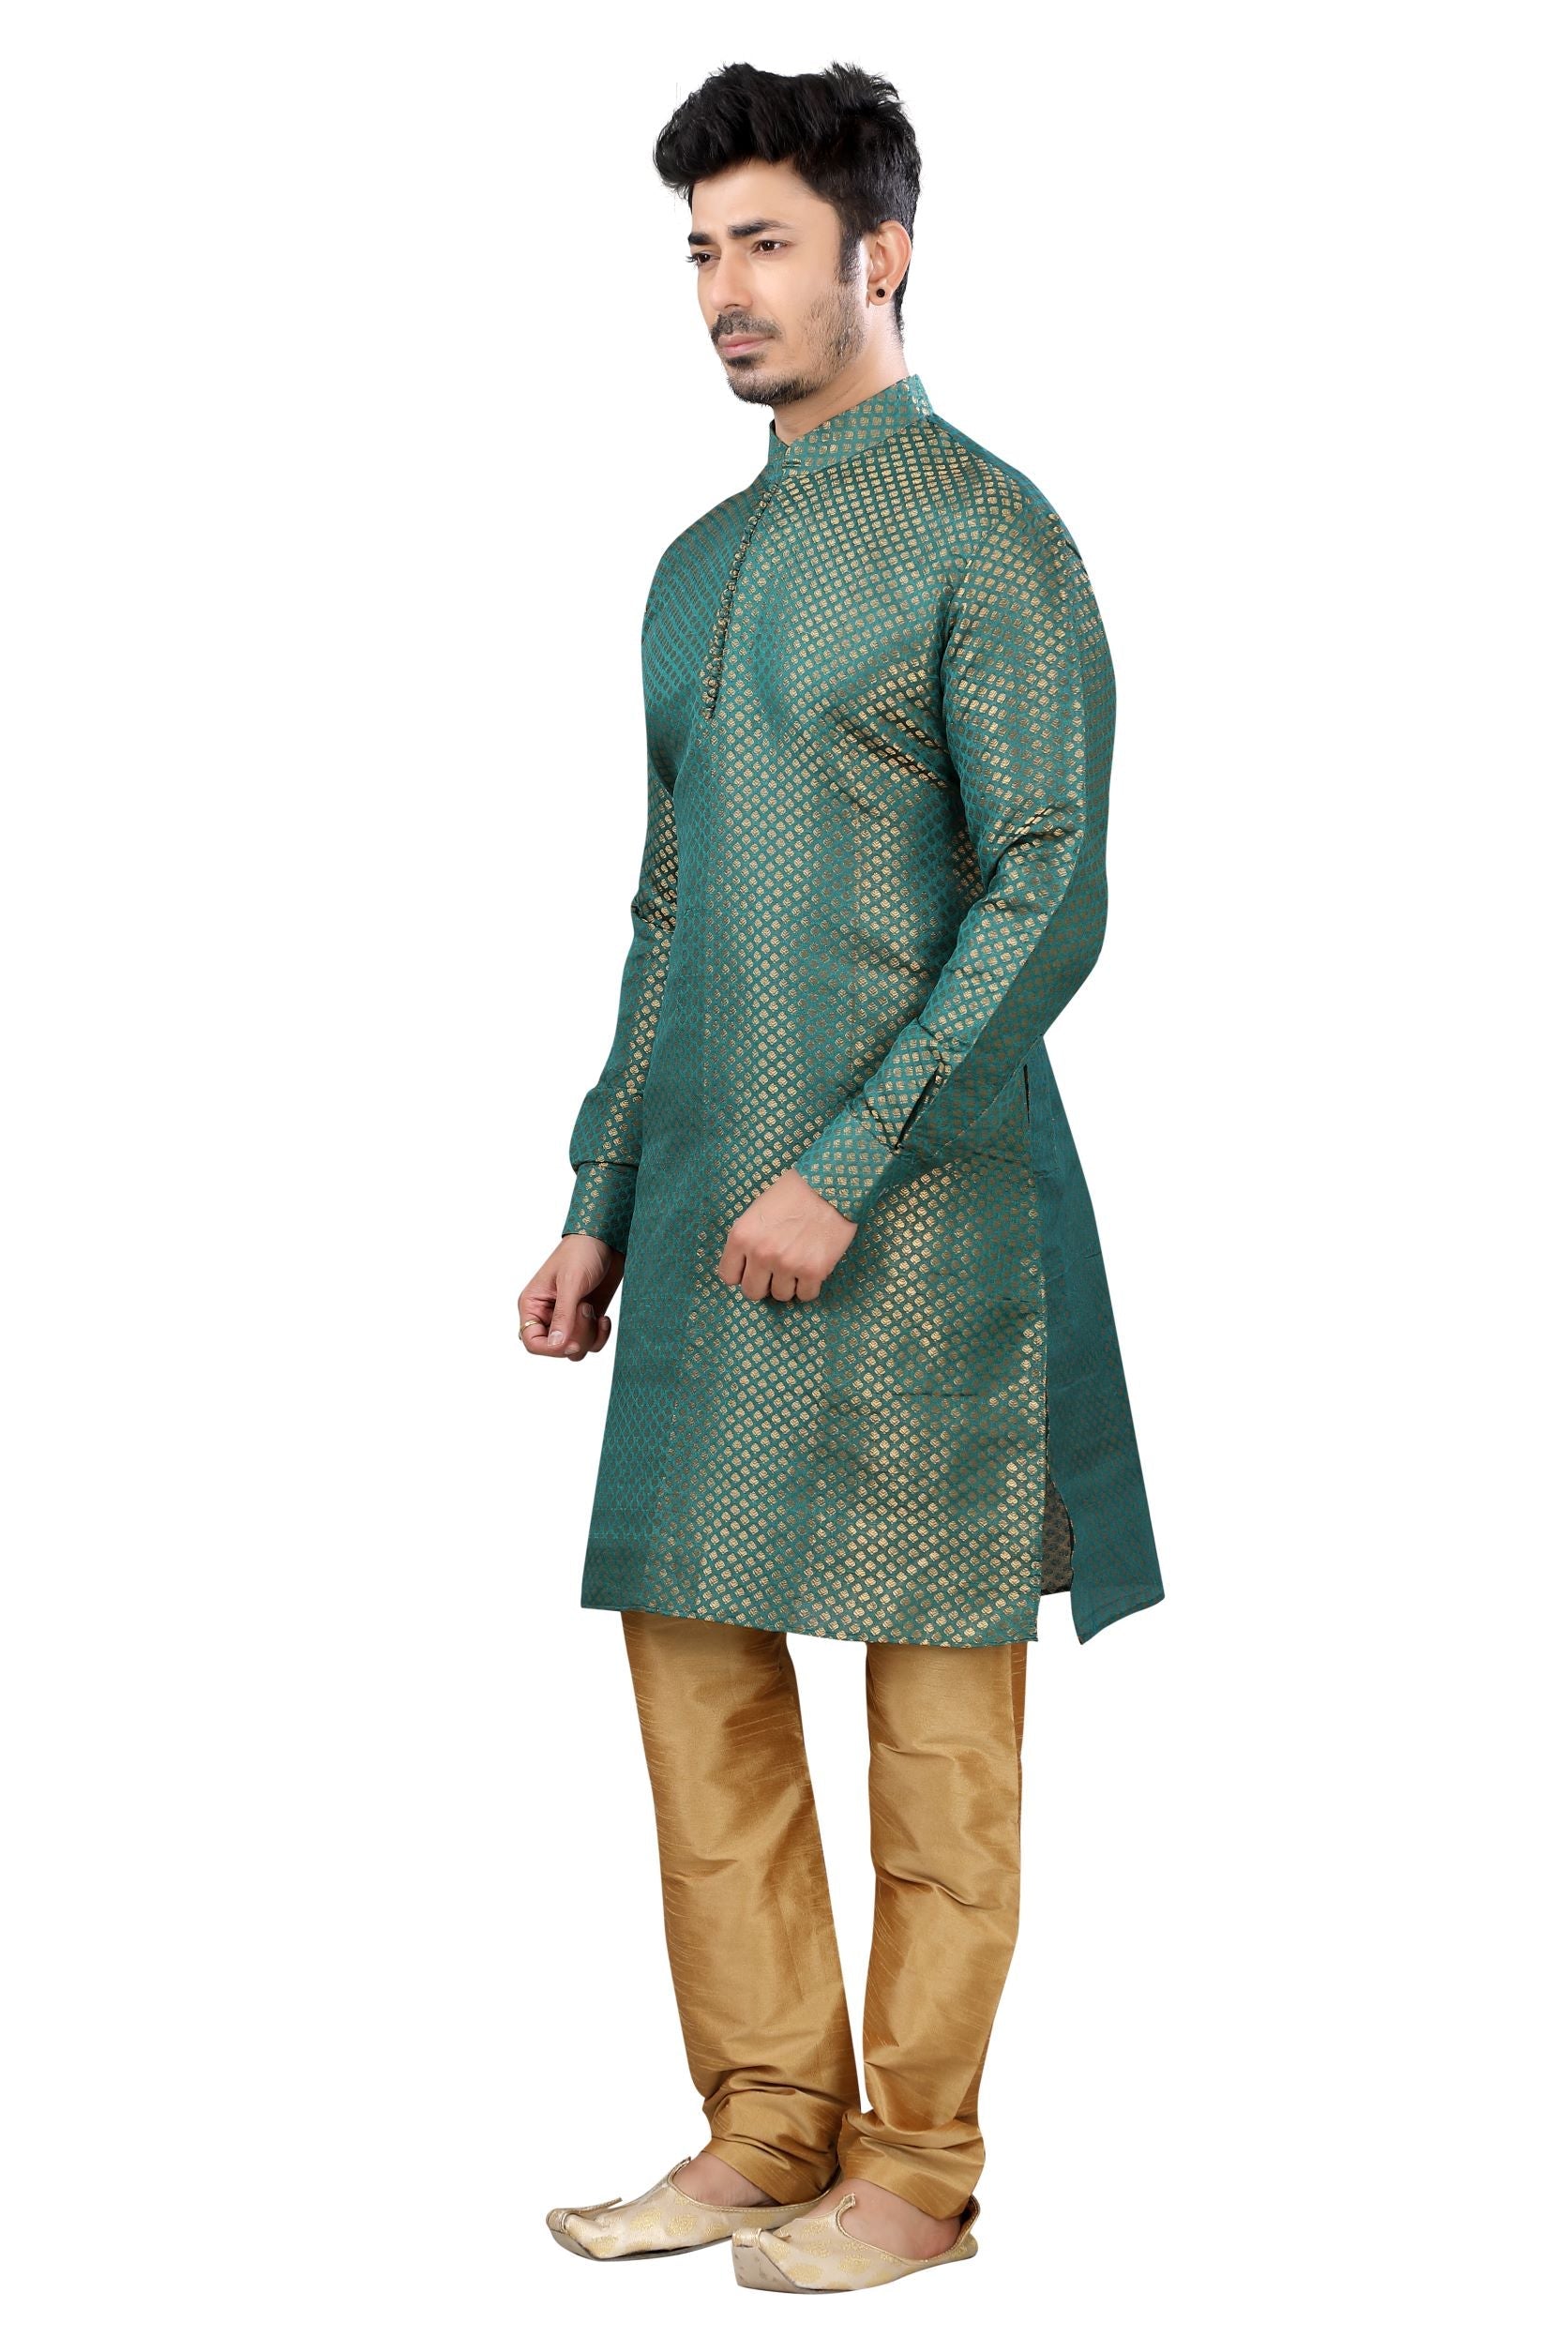 Banarasi Butti Kurta pajama set in Emerald